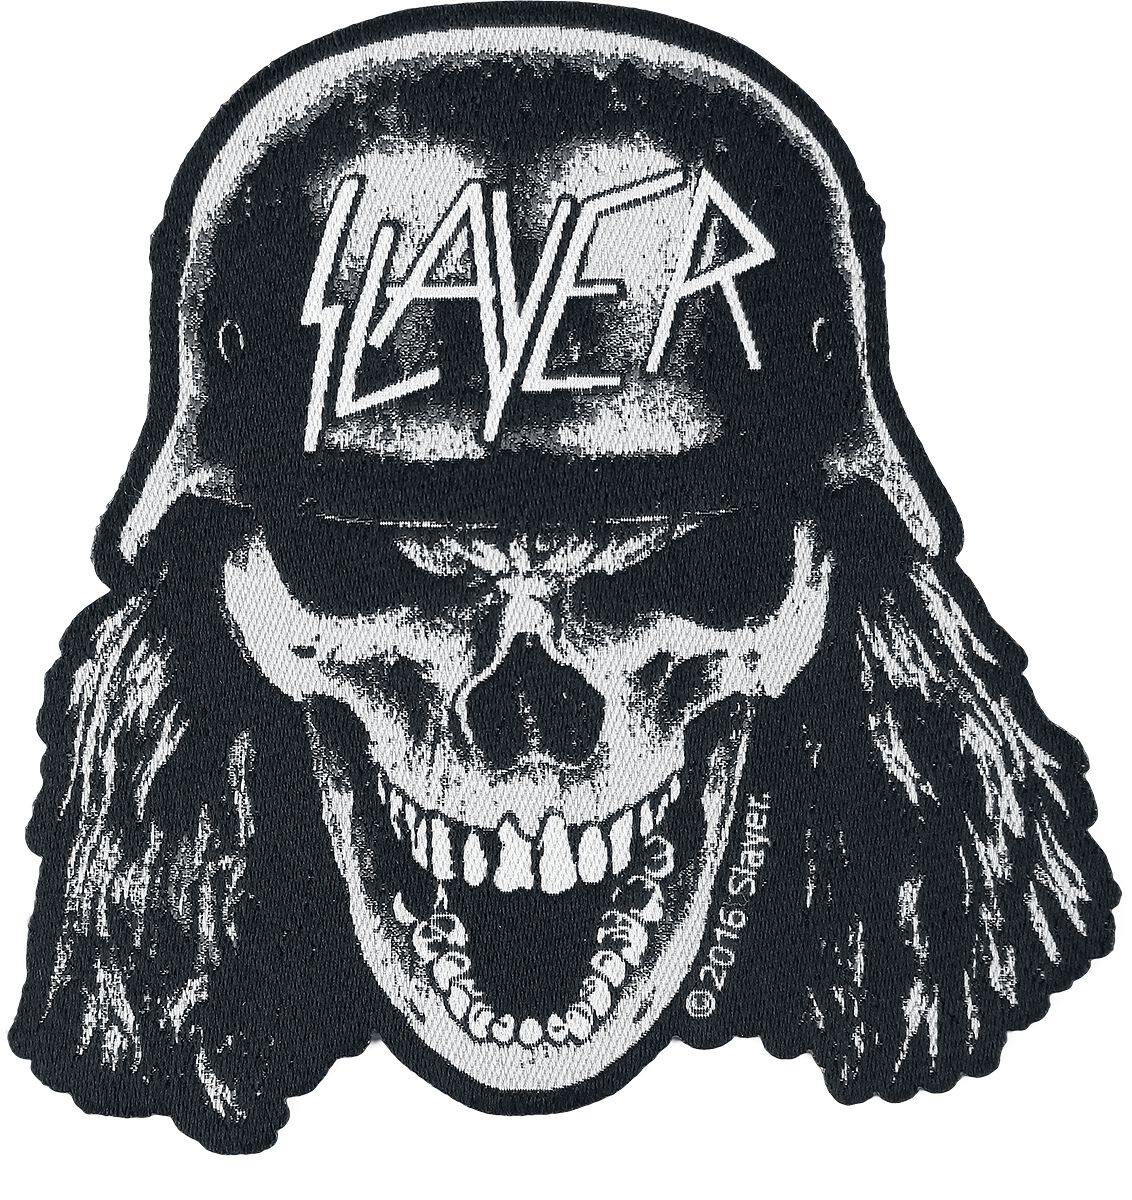 Slayer Patch - Wehrmacht Skull - schwarz/weiß  - Lizenziertes Merchandise!